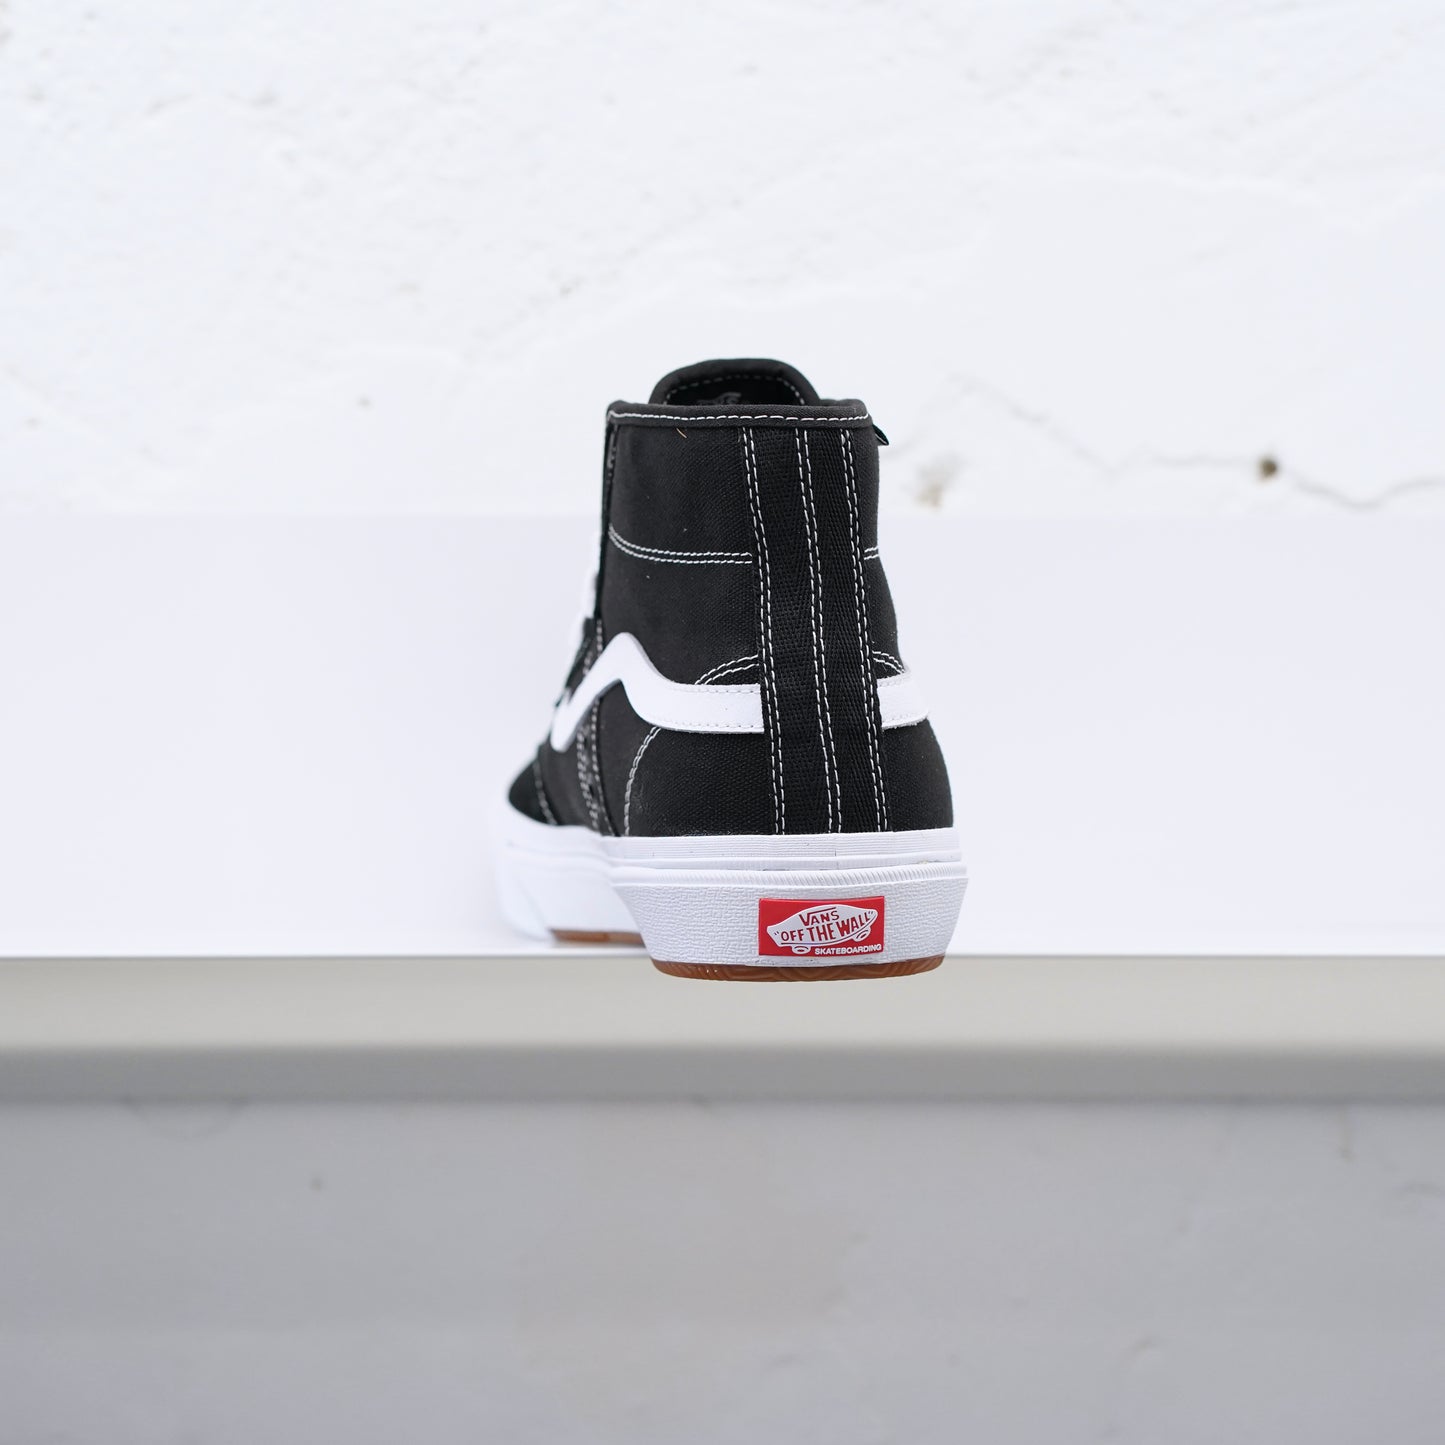 Vans - Crockett High Skate Shoes - Black/White